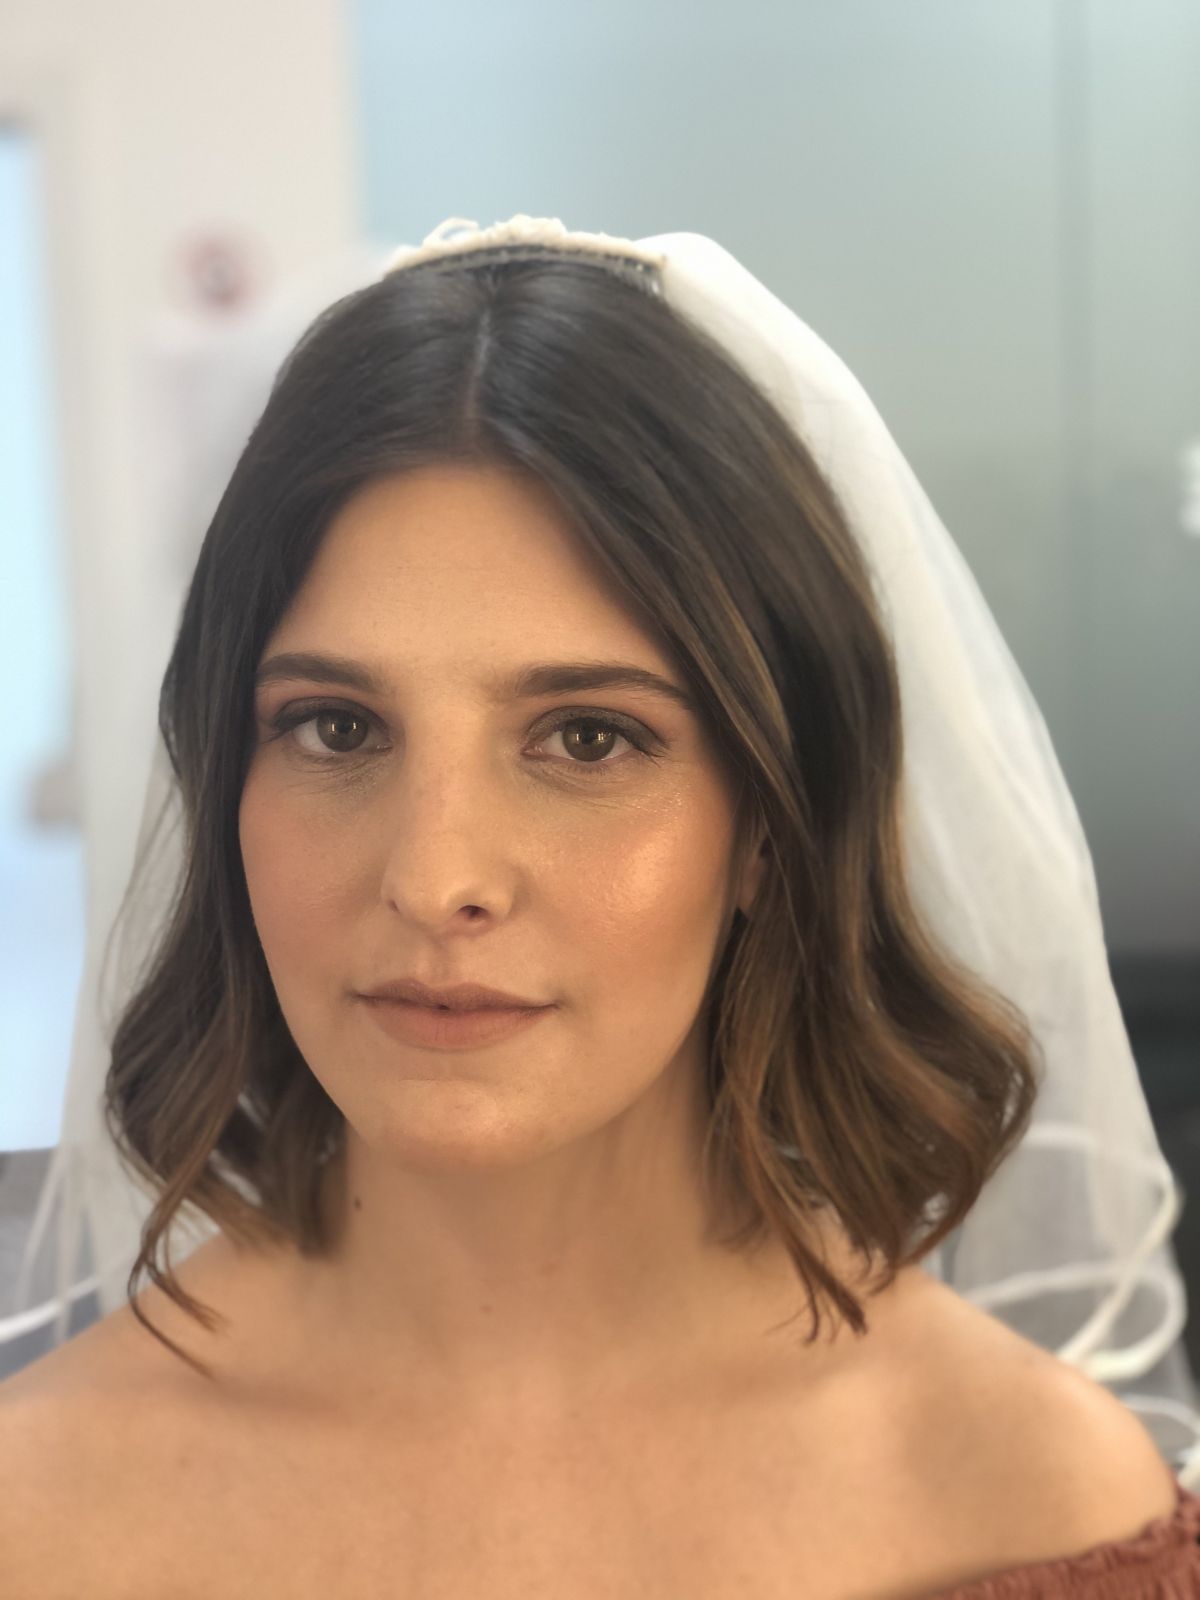 Patrícia Cunha - Vila Nova de Gaia - Maquilhagem para Casamento